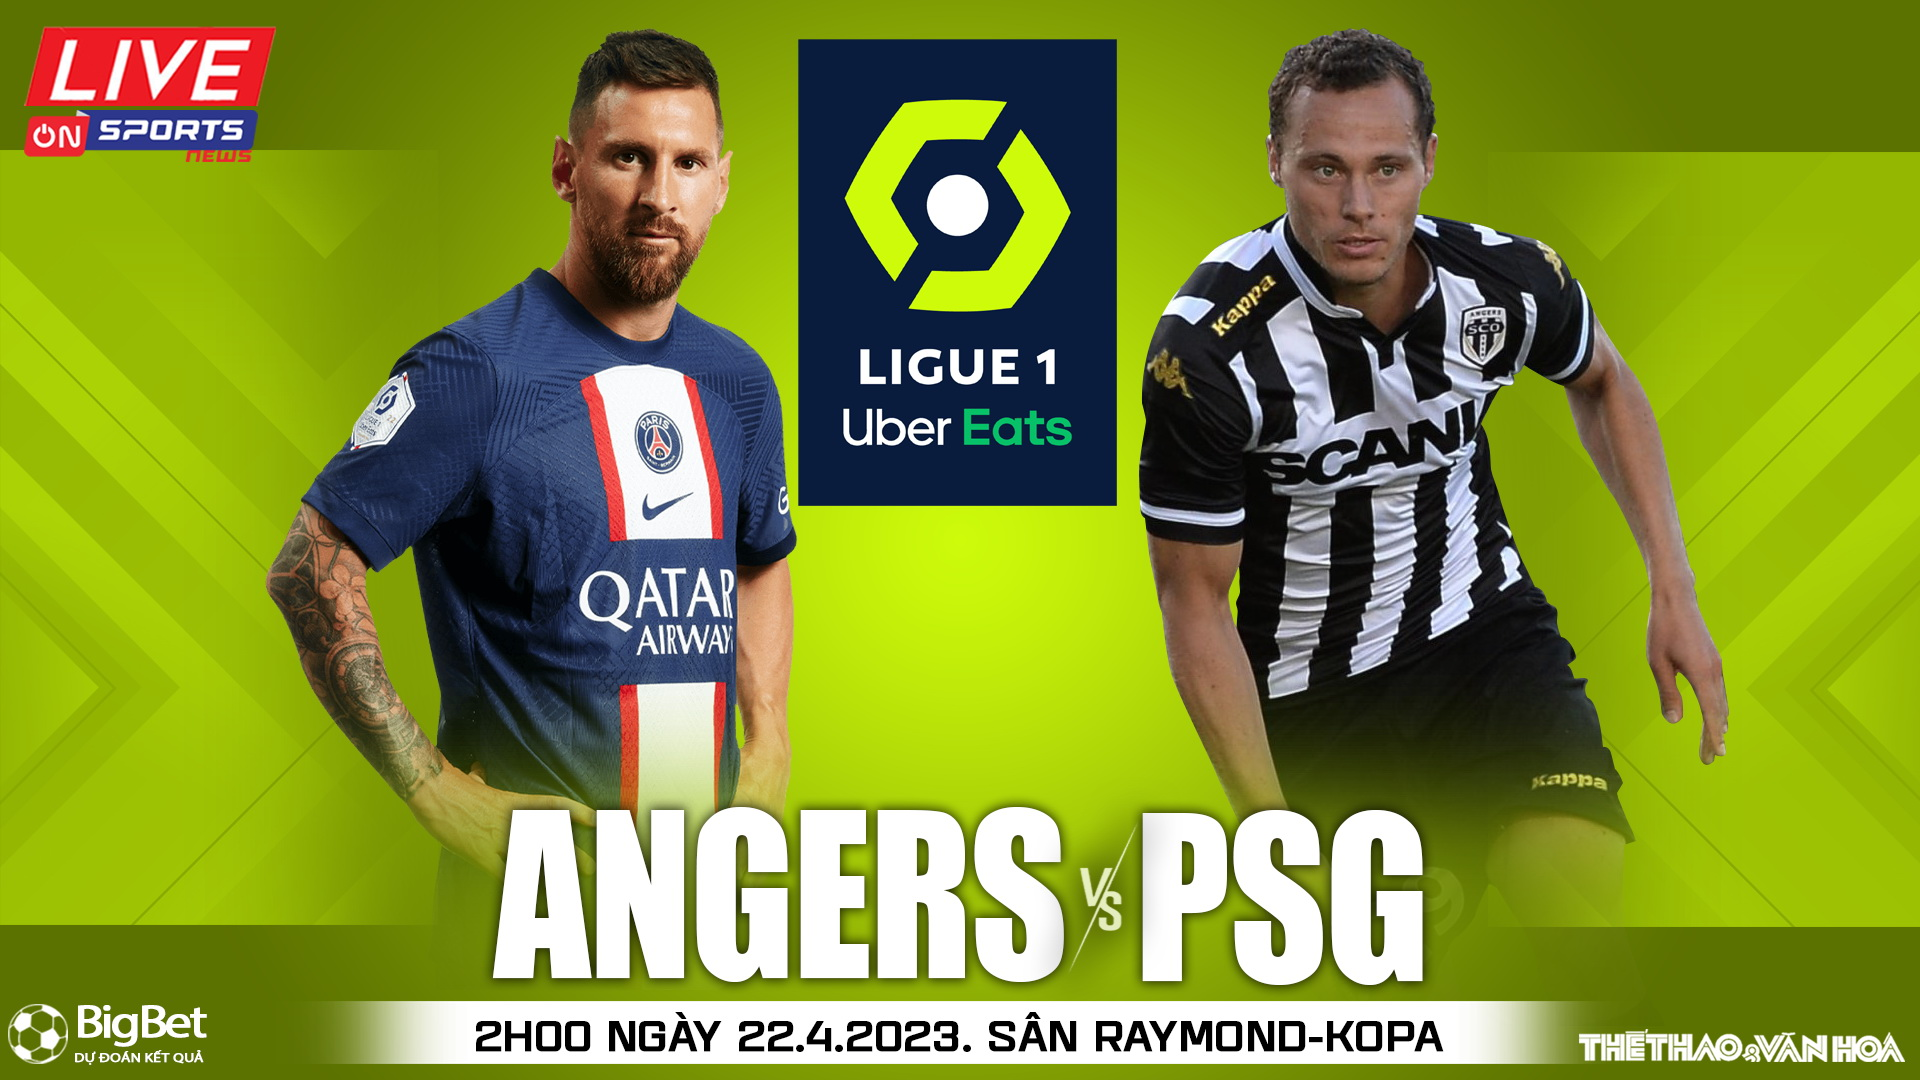 Nhận định bóng đá Angers vs PSG (02h00 ngày 22/4), nhận định bóng đá Ligue 1 vòng 32